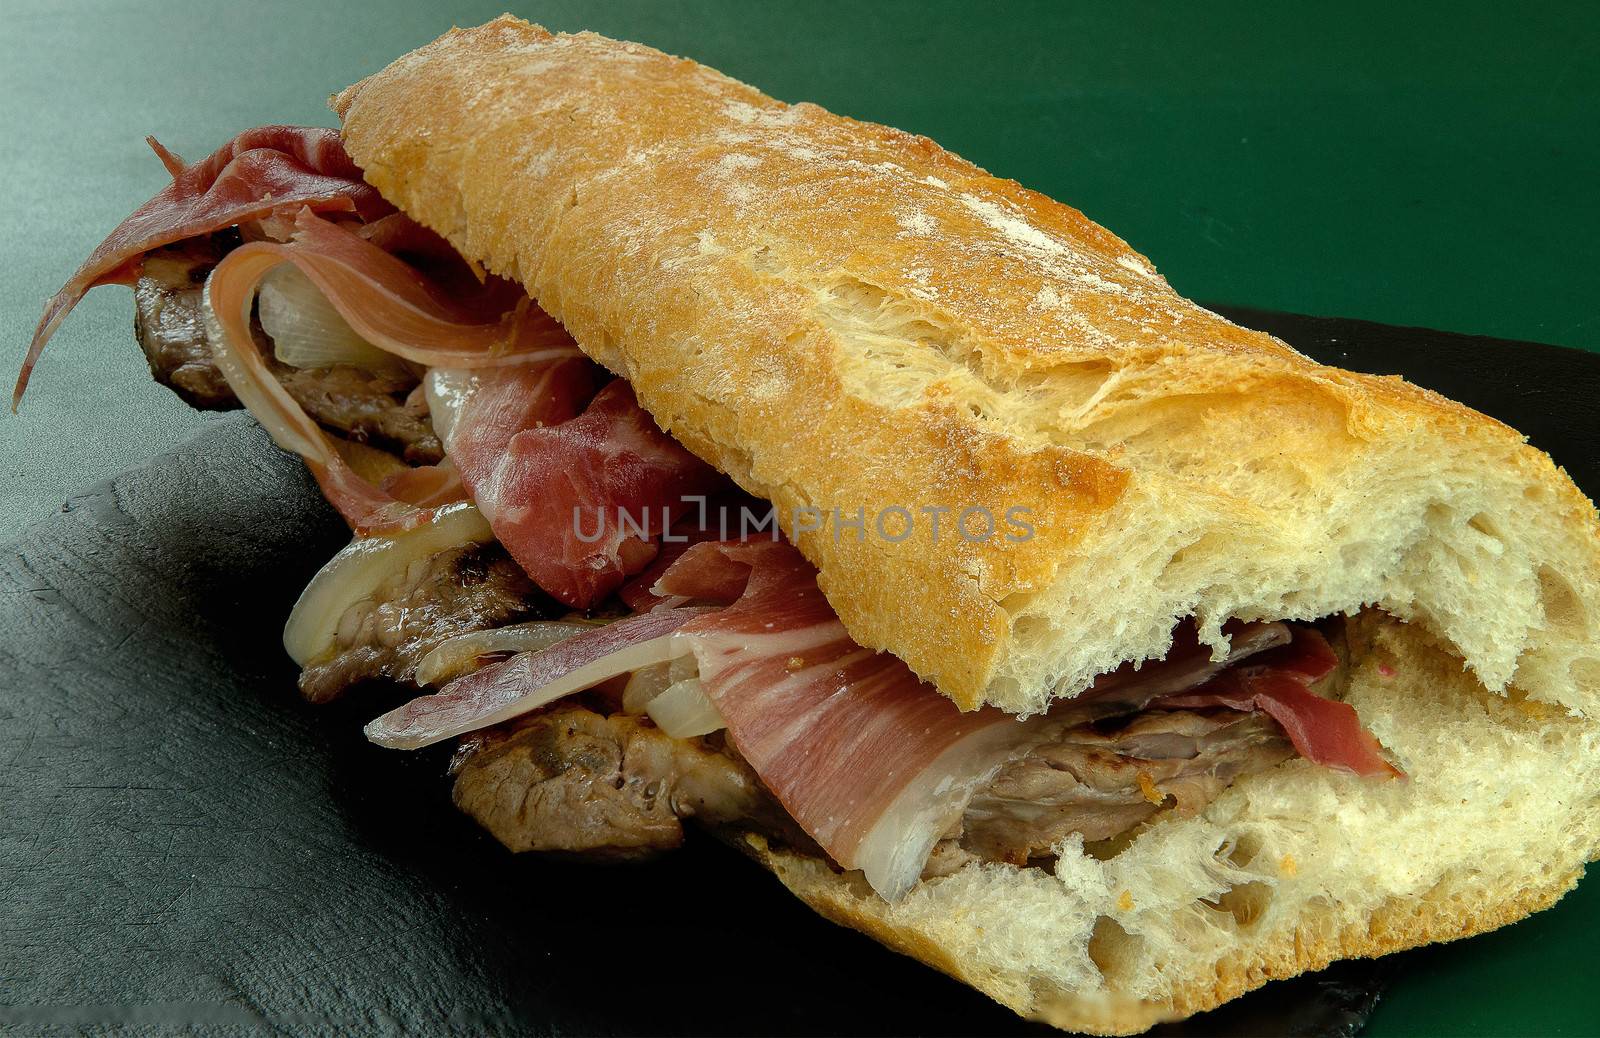 Loin sandwich with ham by bpardofotografia